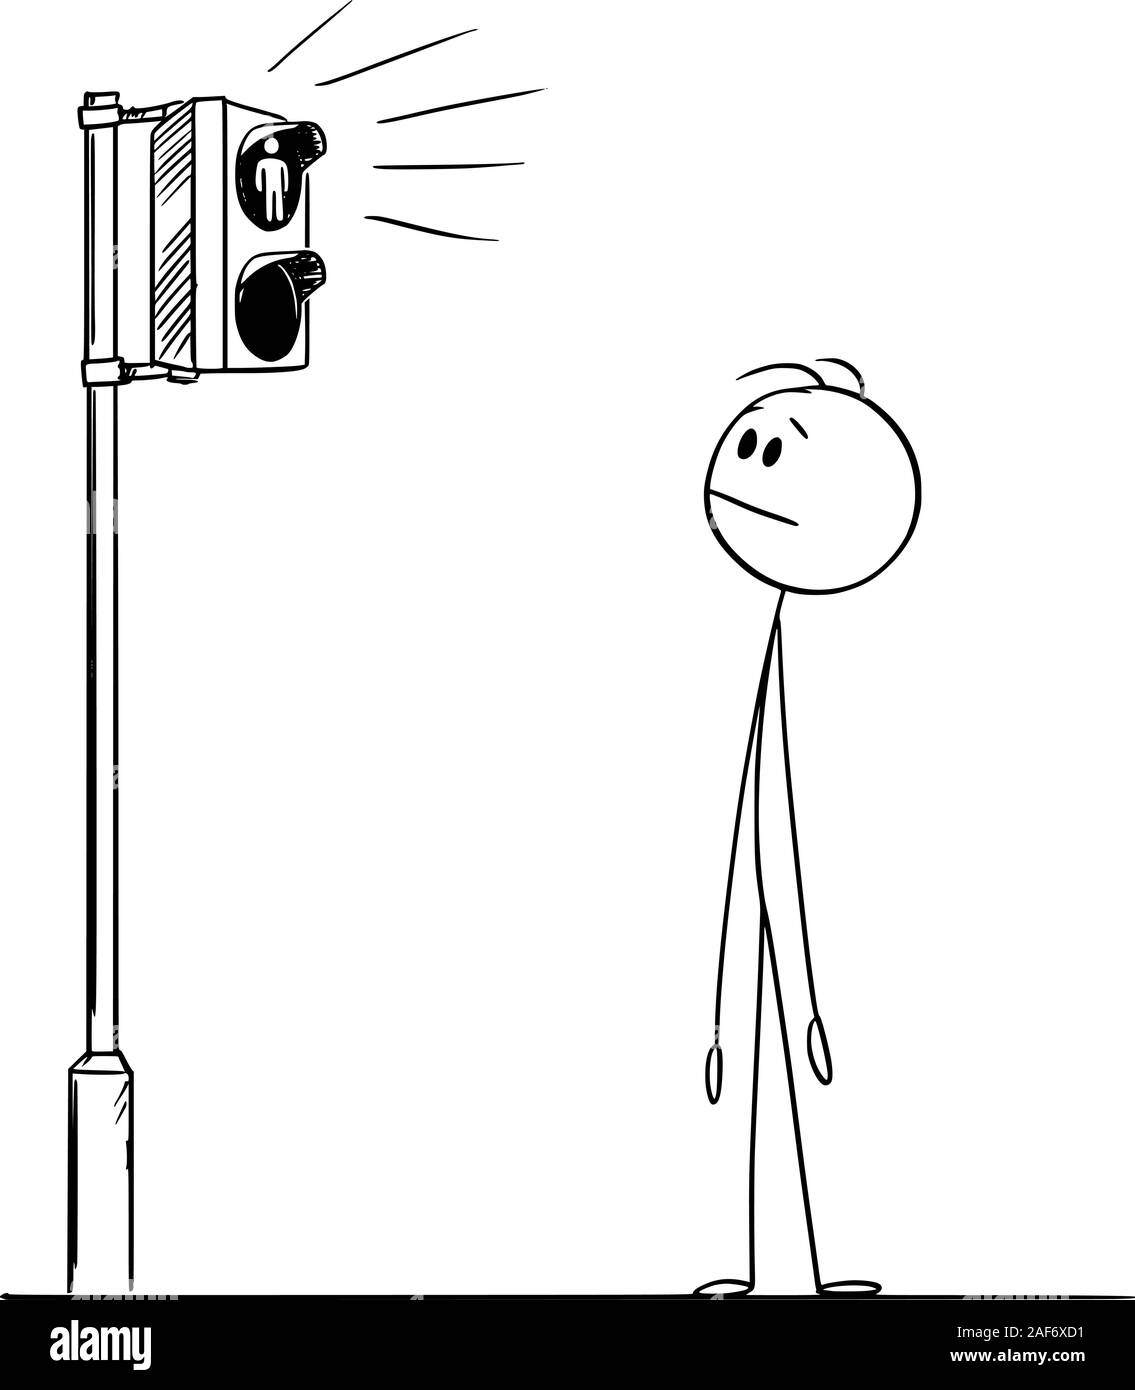 Vector cartoon stick figure dessin illustration conceptuelle de l'homme ou d'un piéton en attente de feu vert sur les feux de circulation sur la rue traversée. Illustration de Vecteur